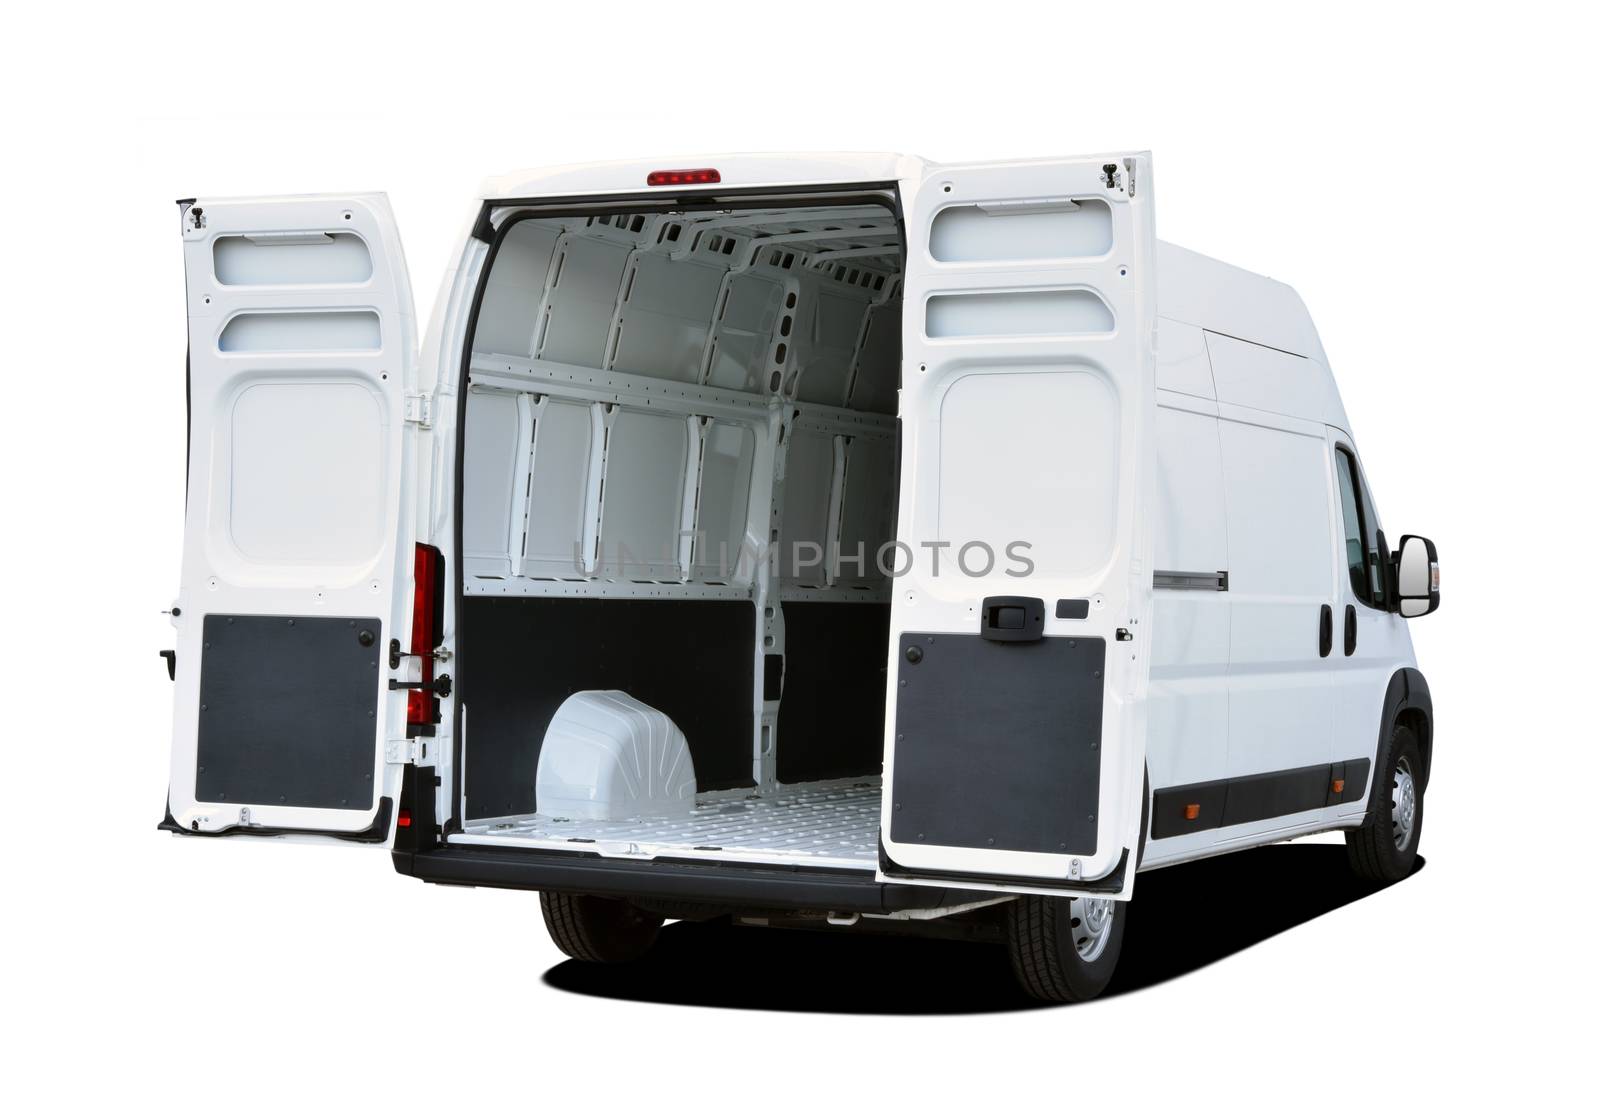 Empty white van with rear doors opened